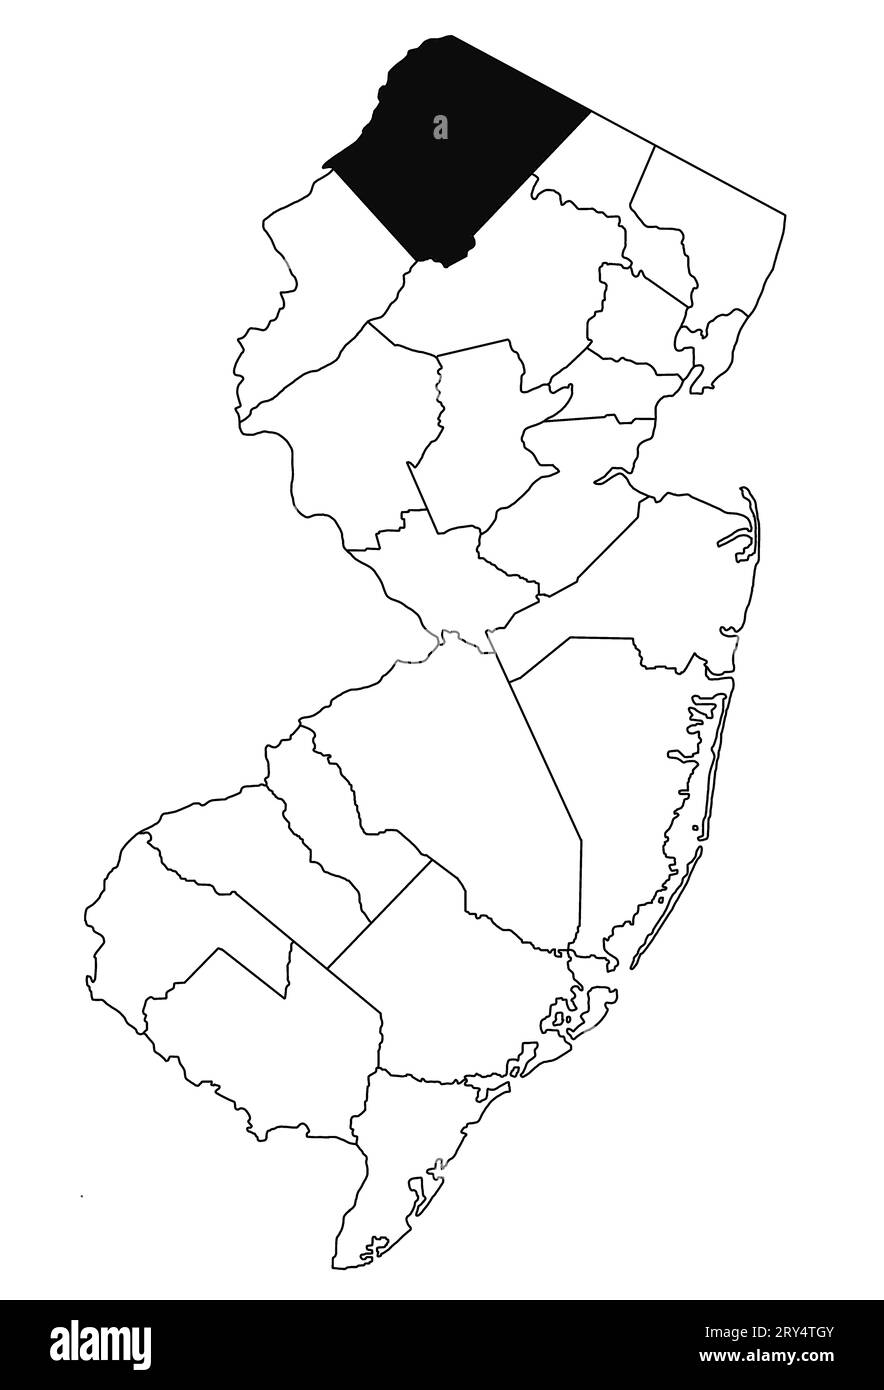 Mapa del condado de Sussex en el estado de Nueva Jersey sobre fondo blanco. Mapa de Condado único resaltado por color negro en el mapa de jersey nuevo. Foto de stock